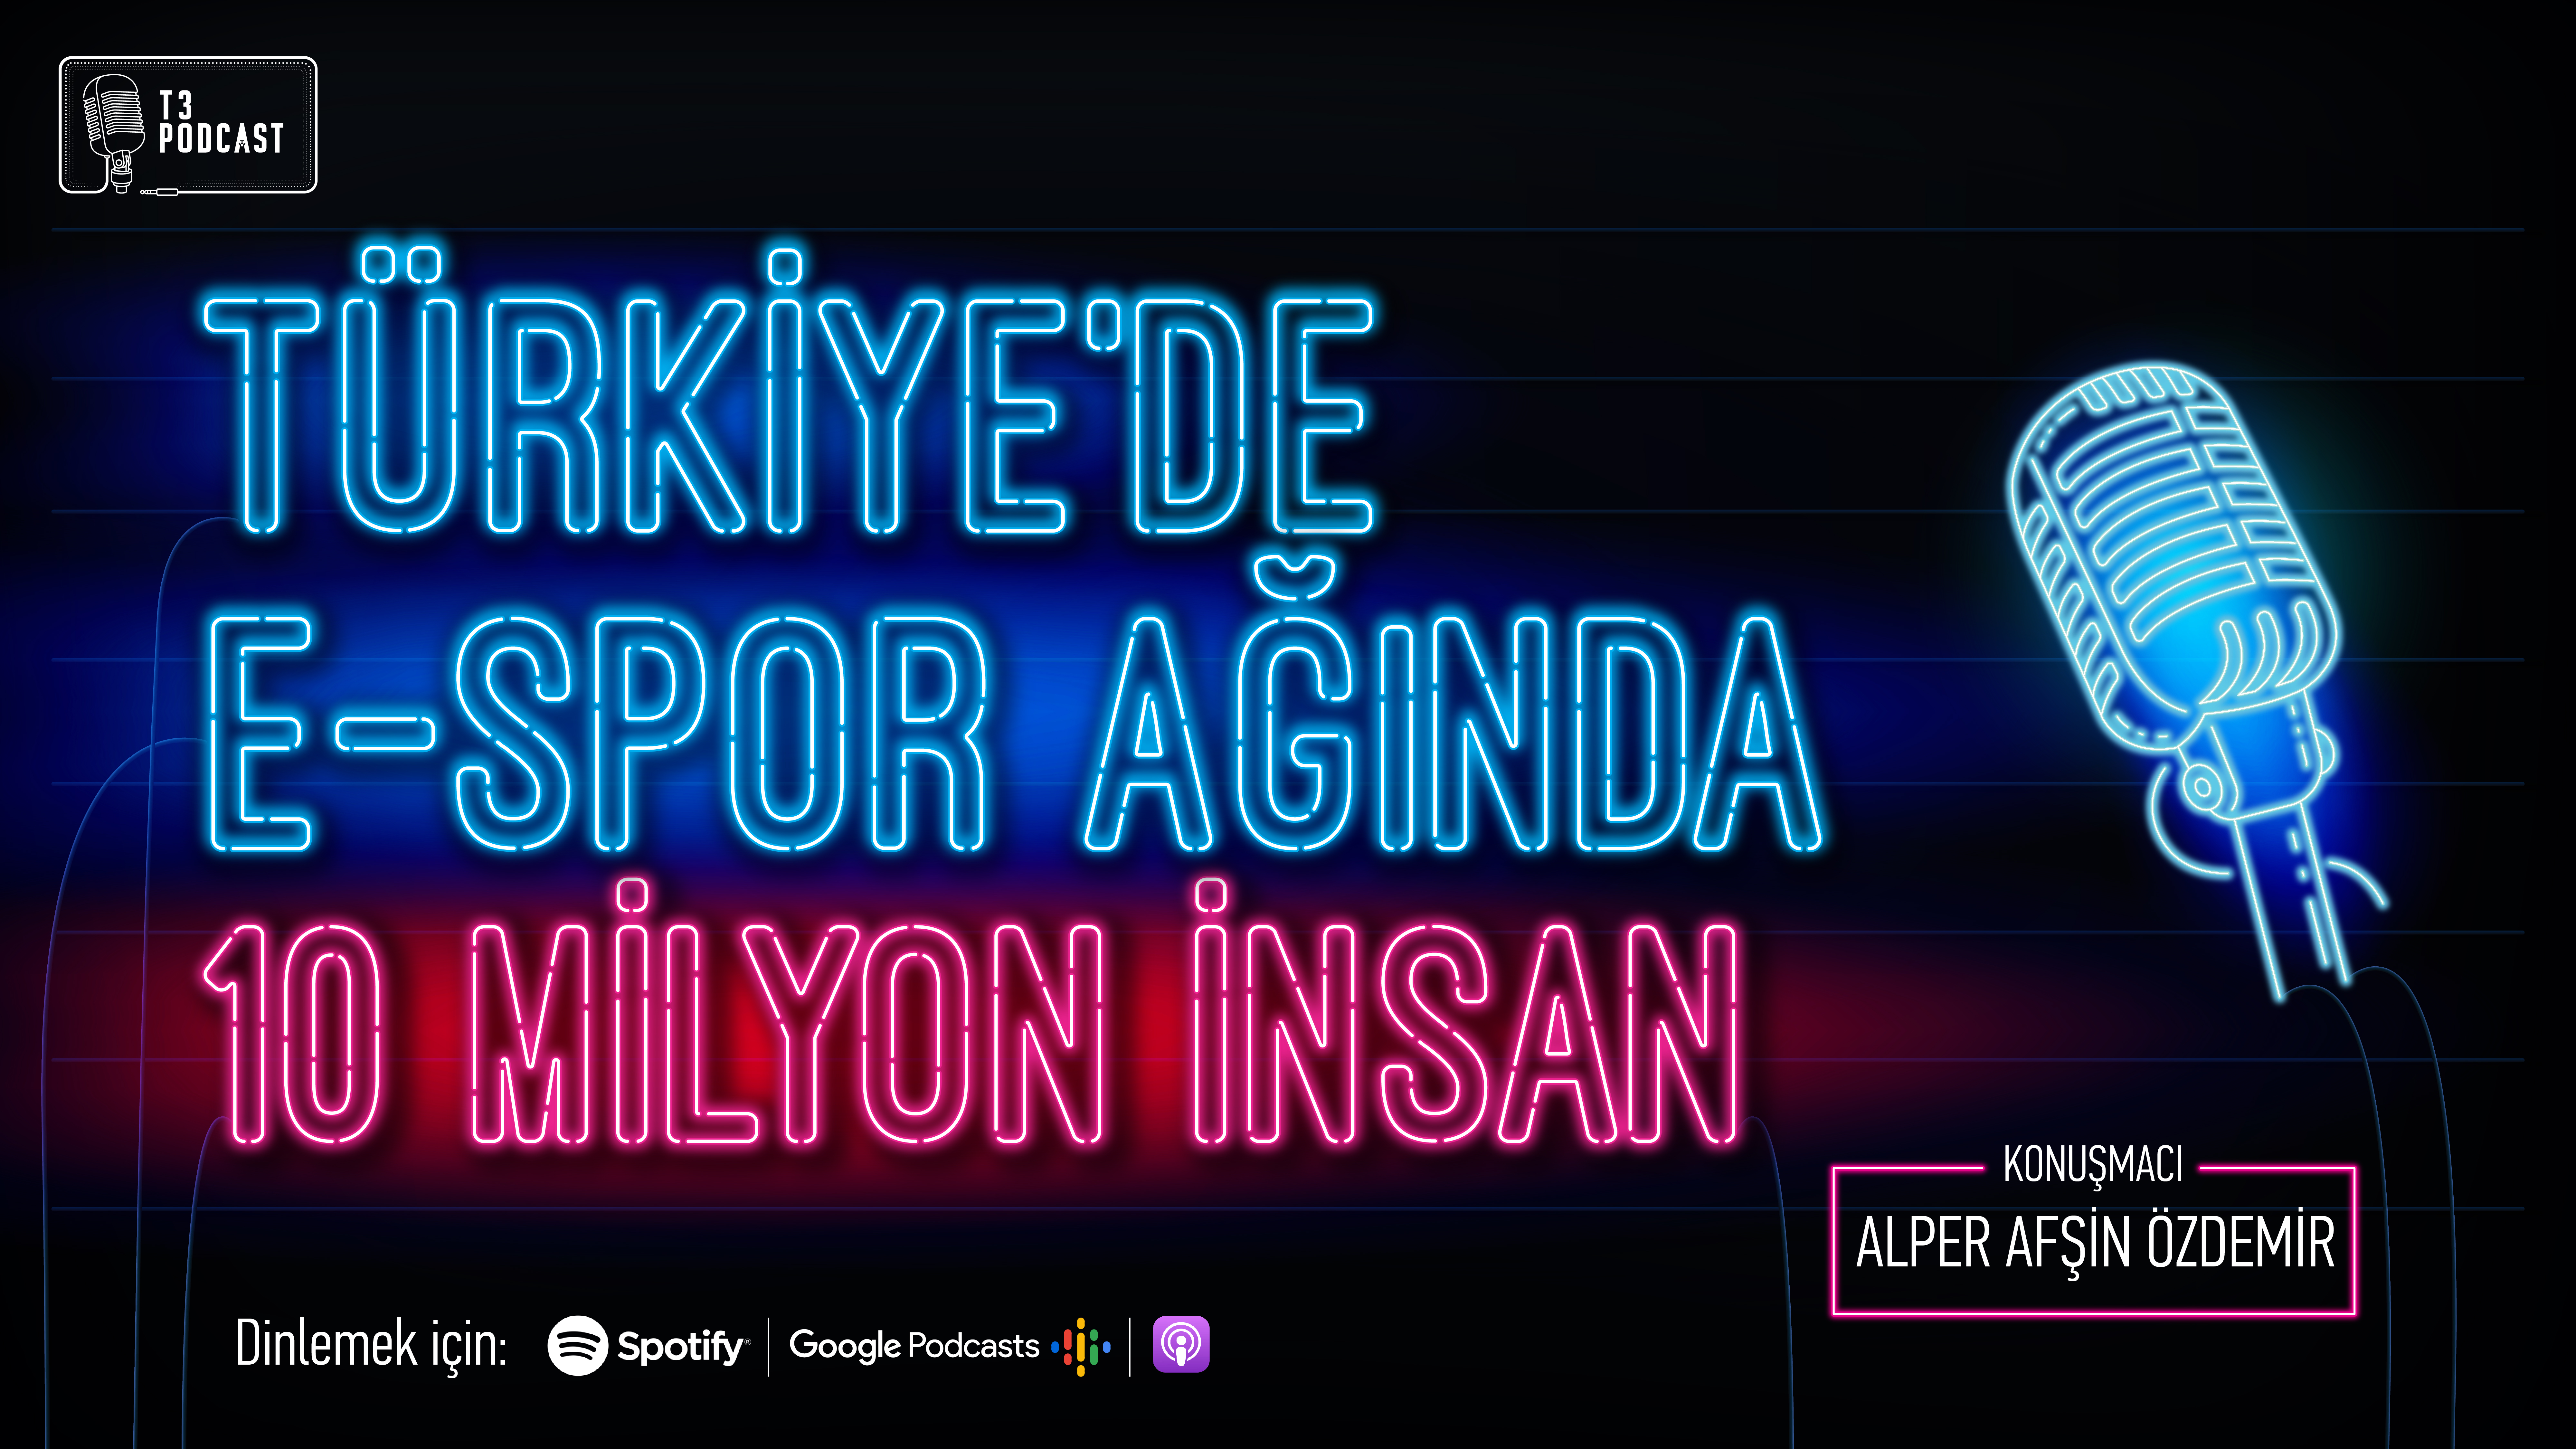 Türkiye'de E-Spor Ağında 10 Milyon İnsan - Alper Afşin Özdemir